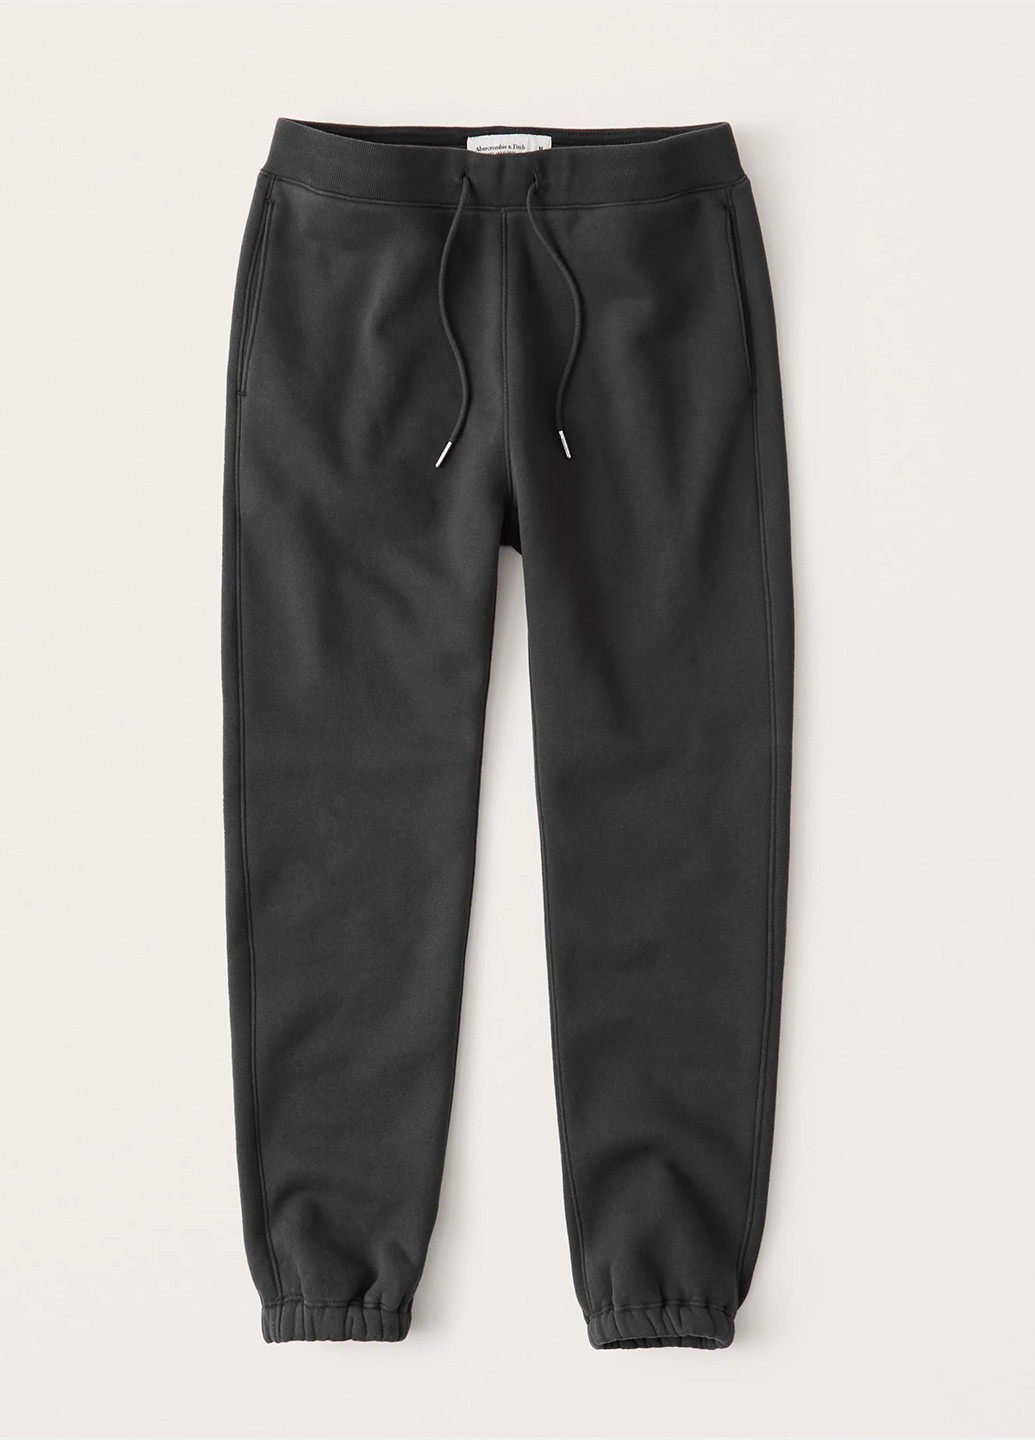 Темно-серые спортивные демисезонные джоггеры брюки Abercrombie & Fitch